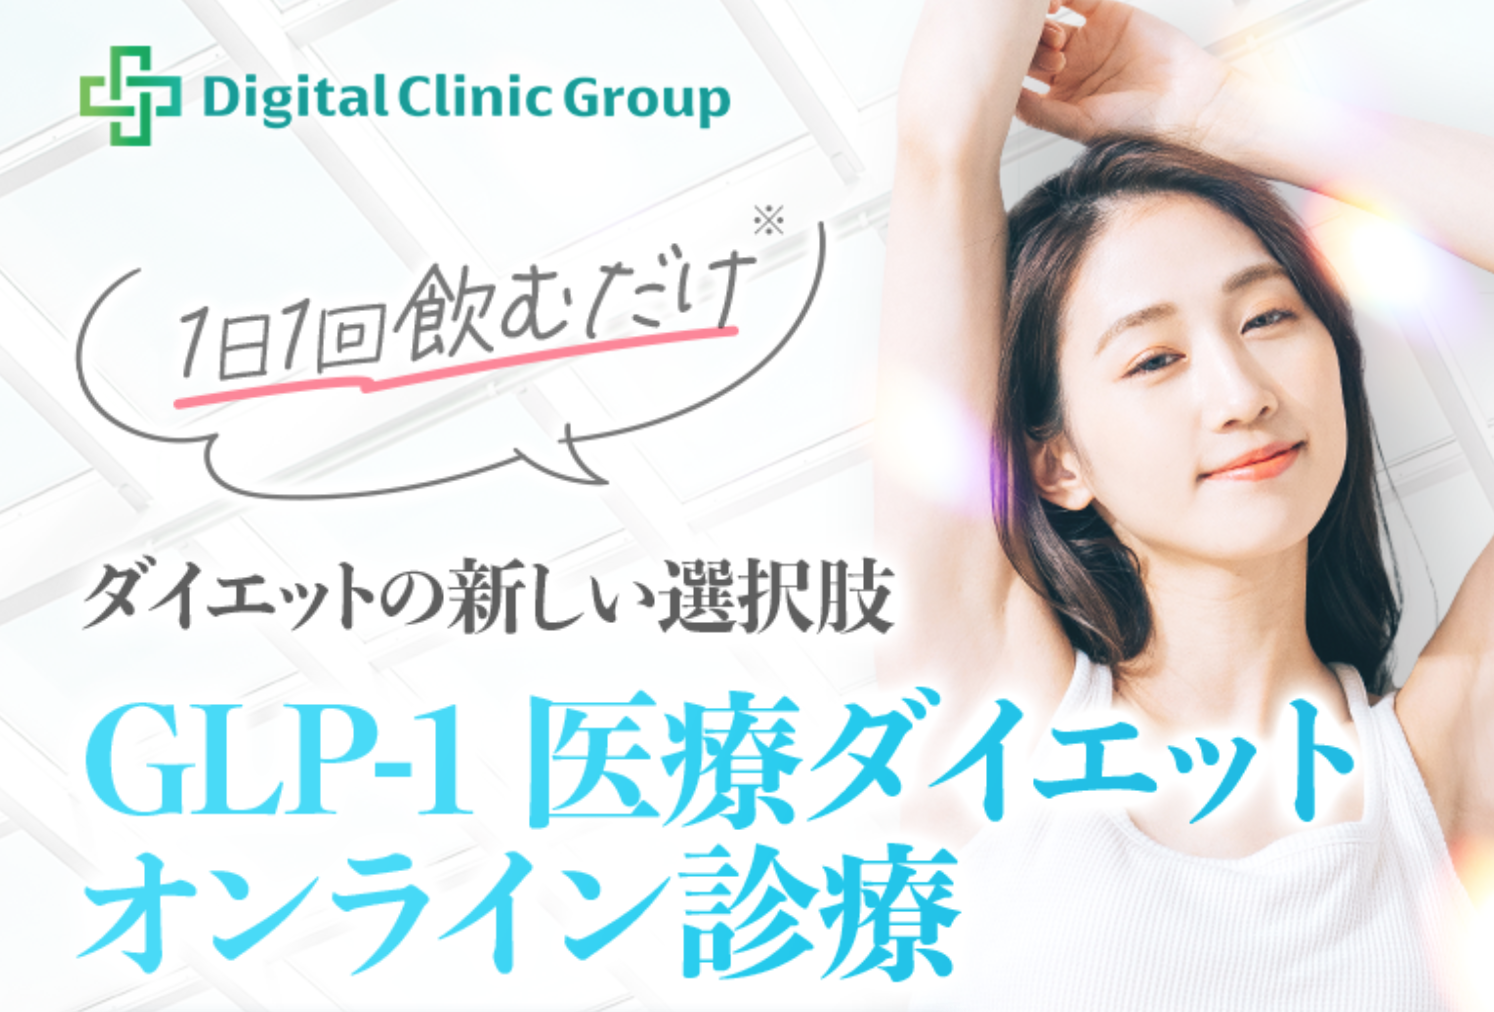 Digital Clinic Group　GLP-1